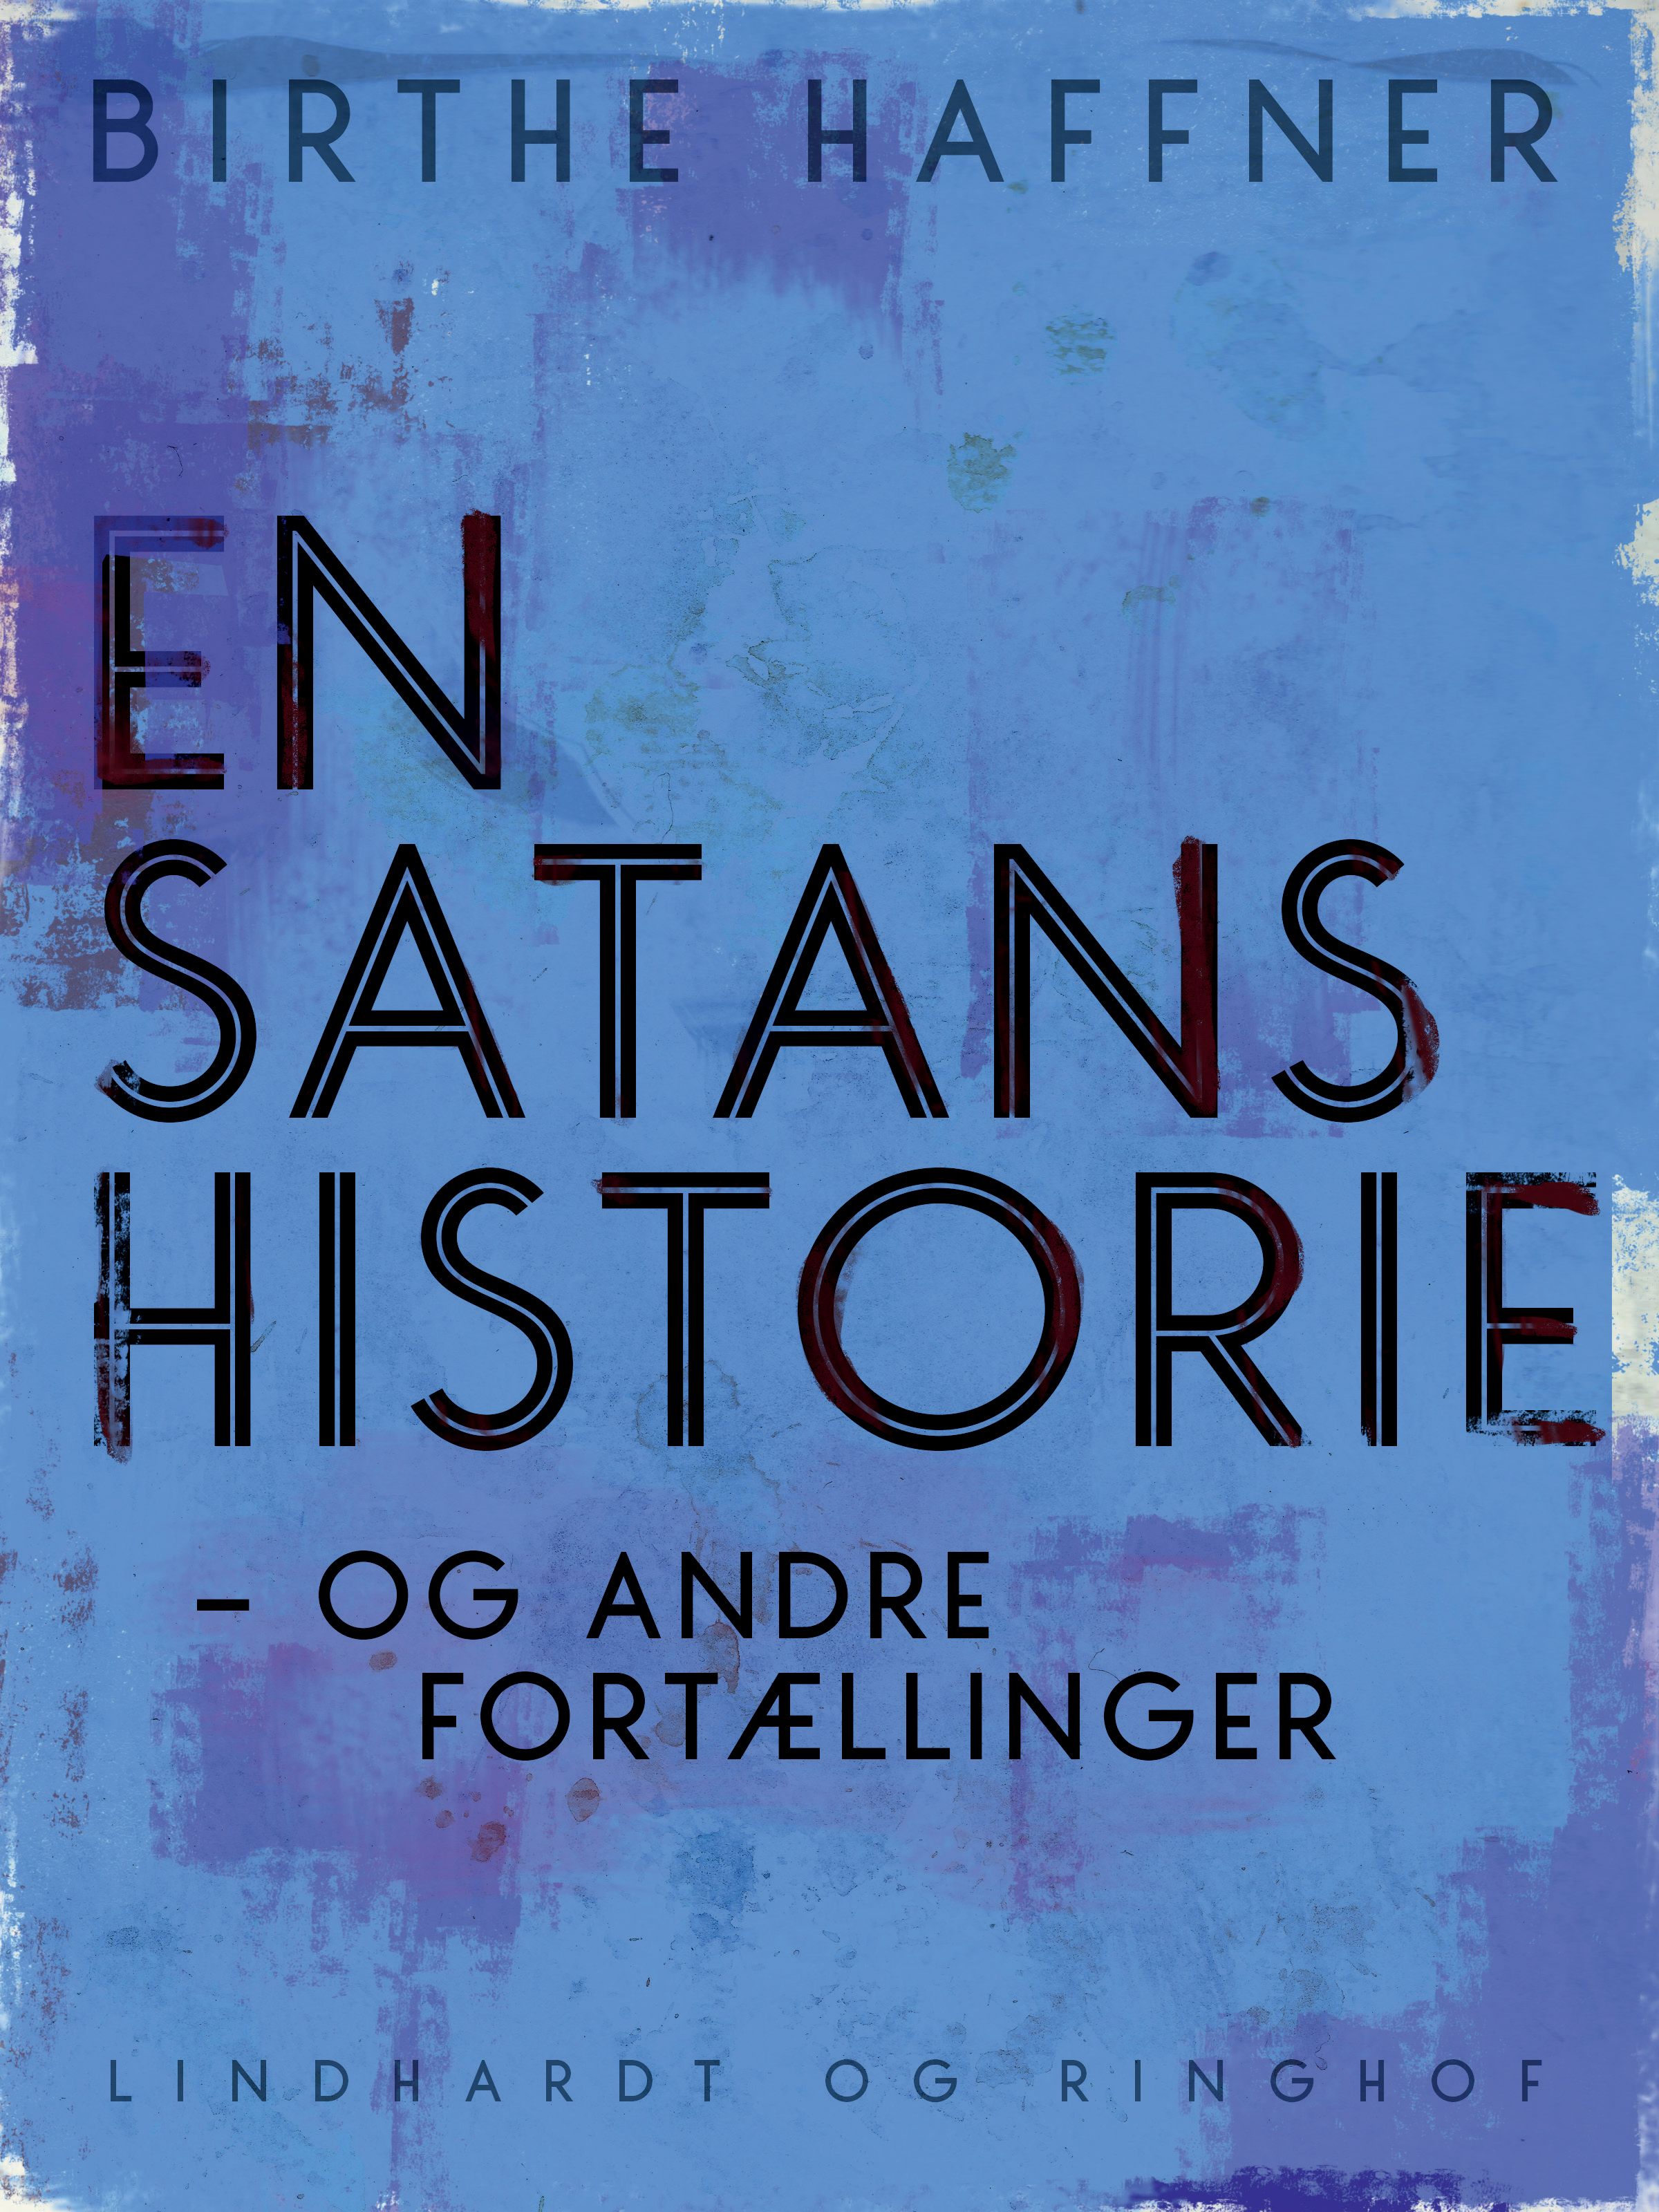 En satans historie - og andre fortællinger, audiobook by Birthe Haffner